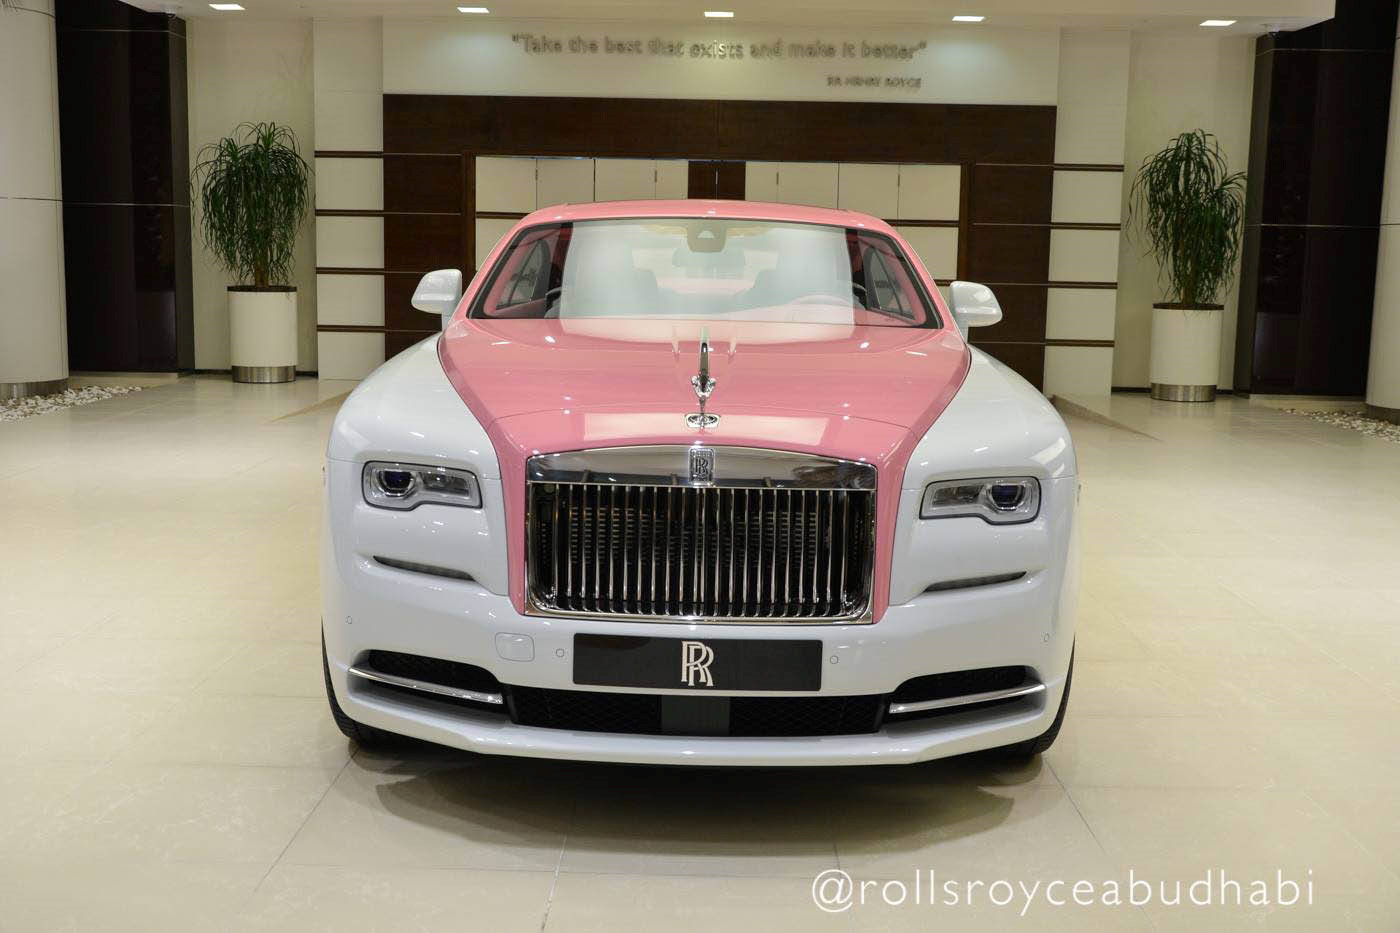 Tin tức - Ngắm Rolls-Royce Wraith phiên bản Barbie hồng “độc nhất vô nhị“ ở Abu Dhabi (Hình 5).